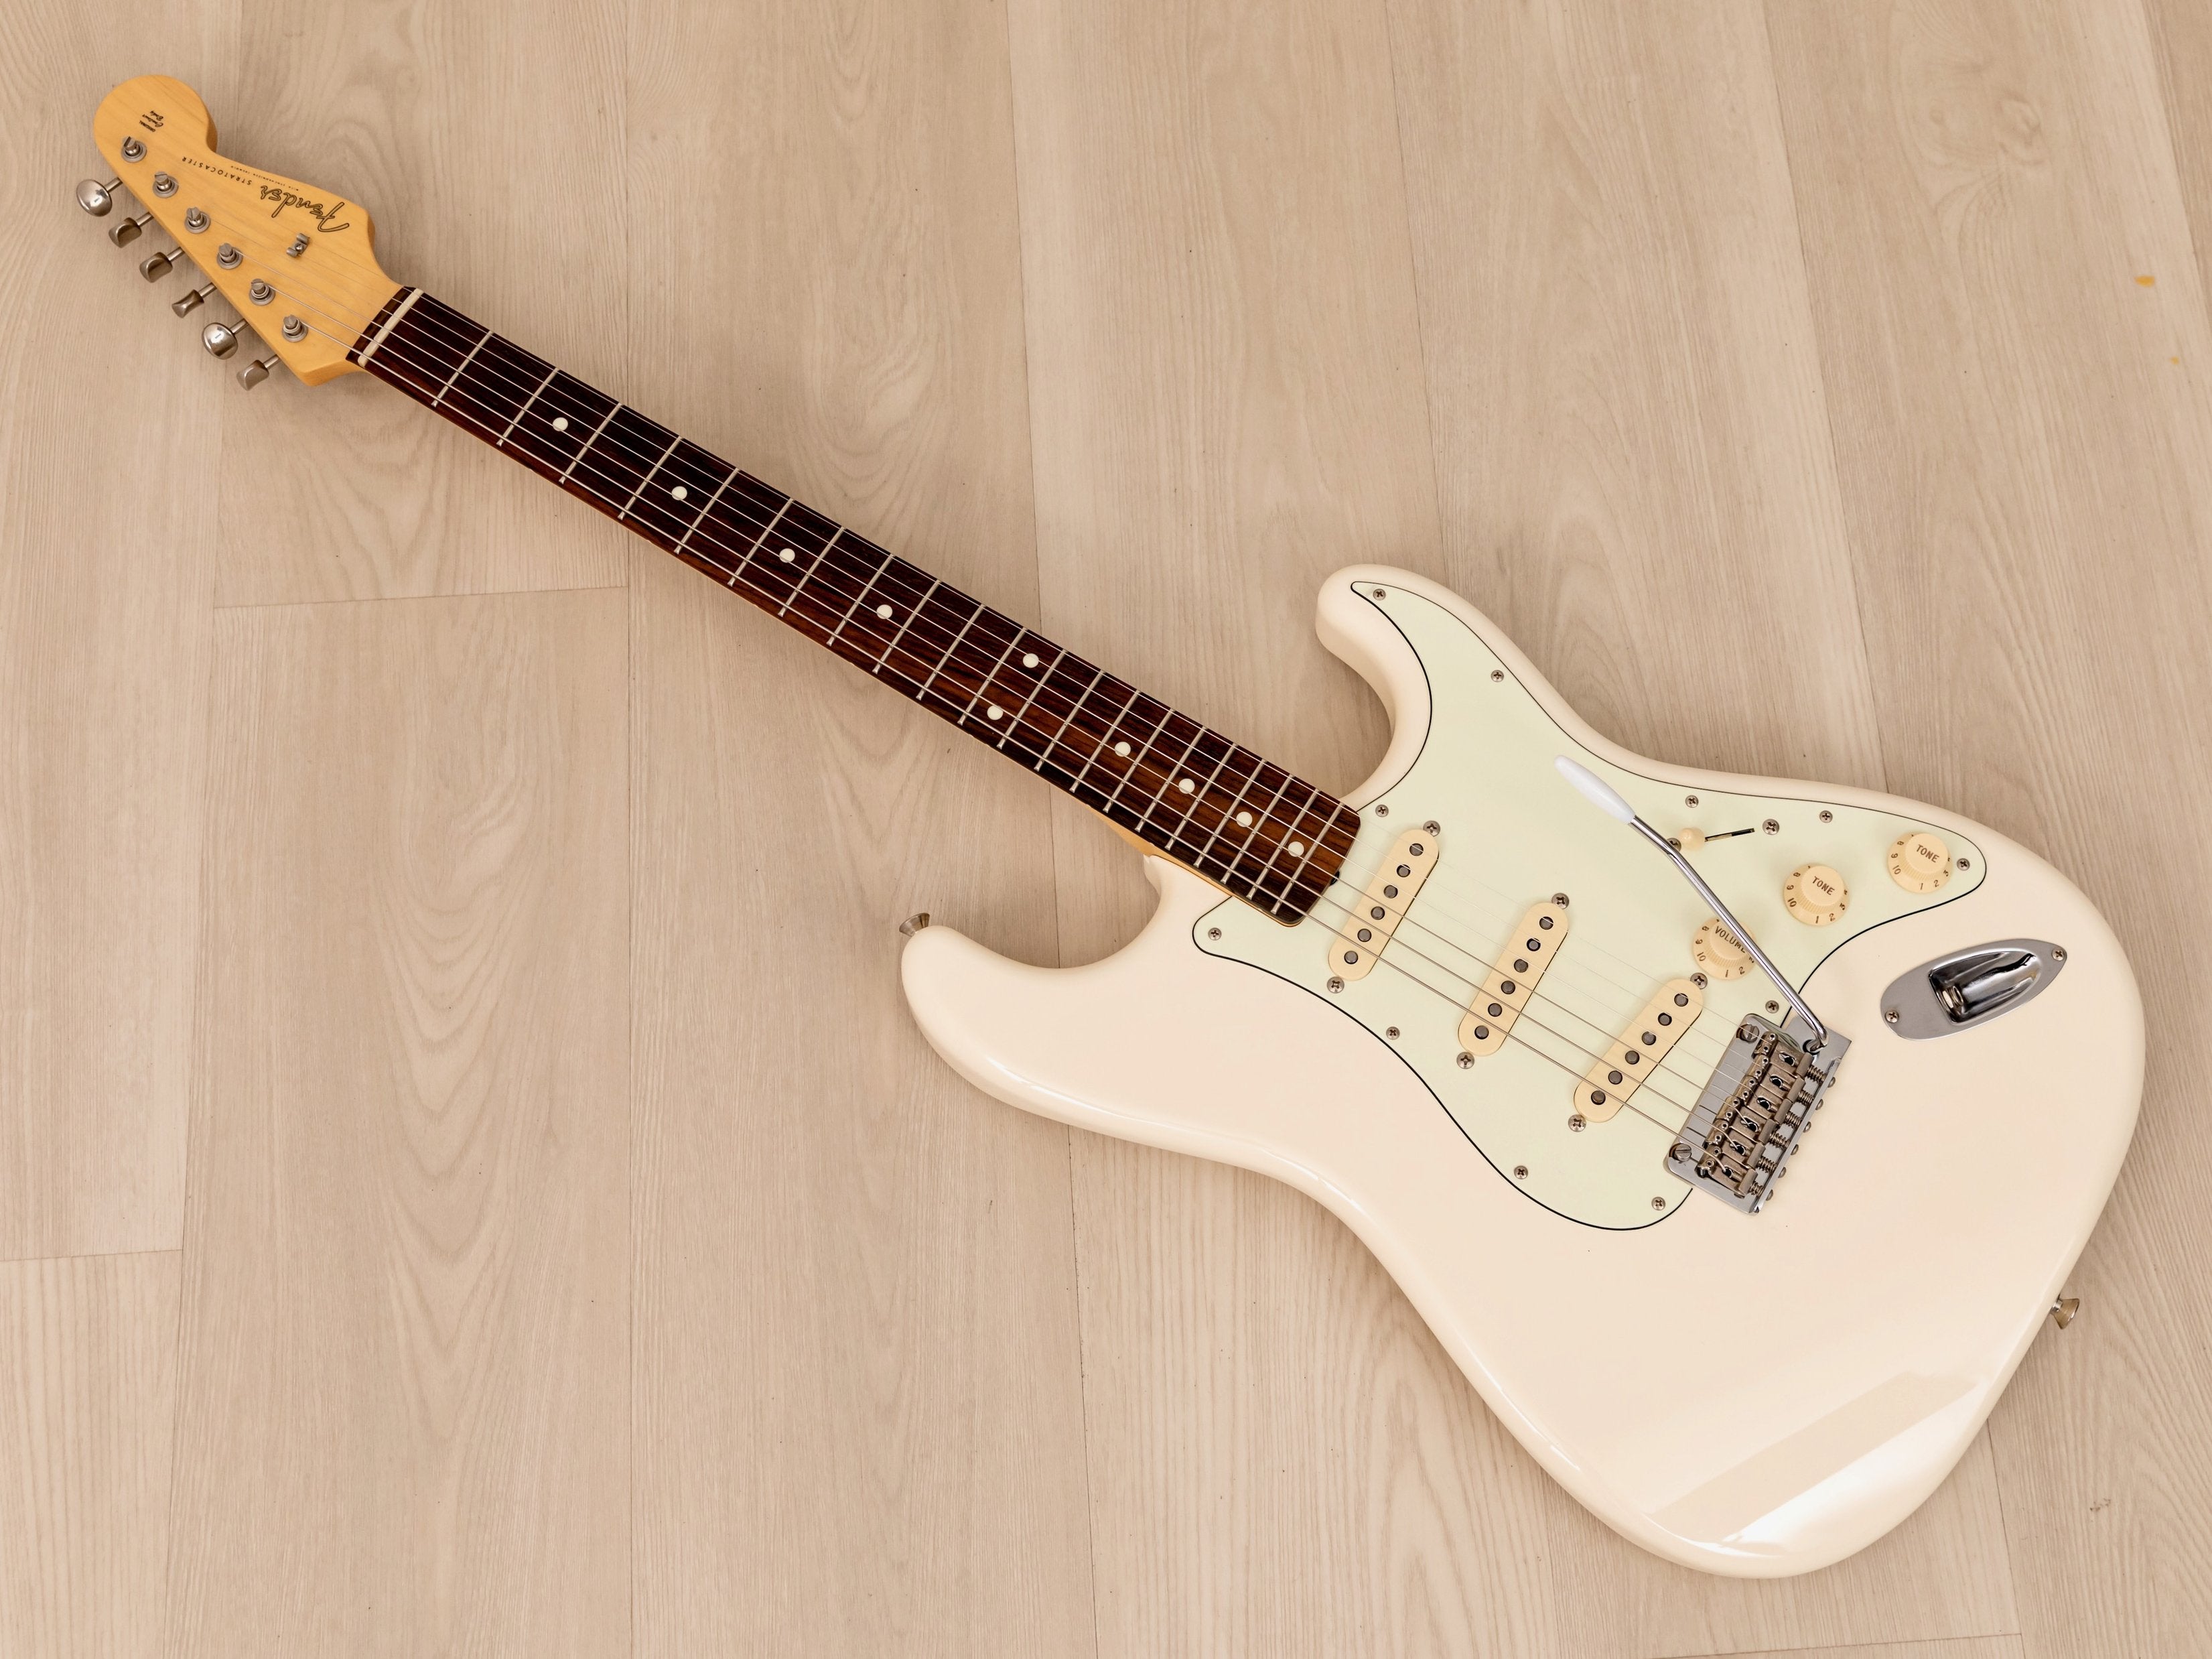 2019 Fender Hybrid 60s Stratocaster Olympic White w/ USA Pickups & Hangtags, Japan MIJ